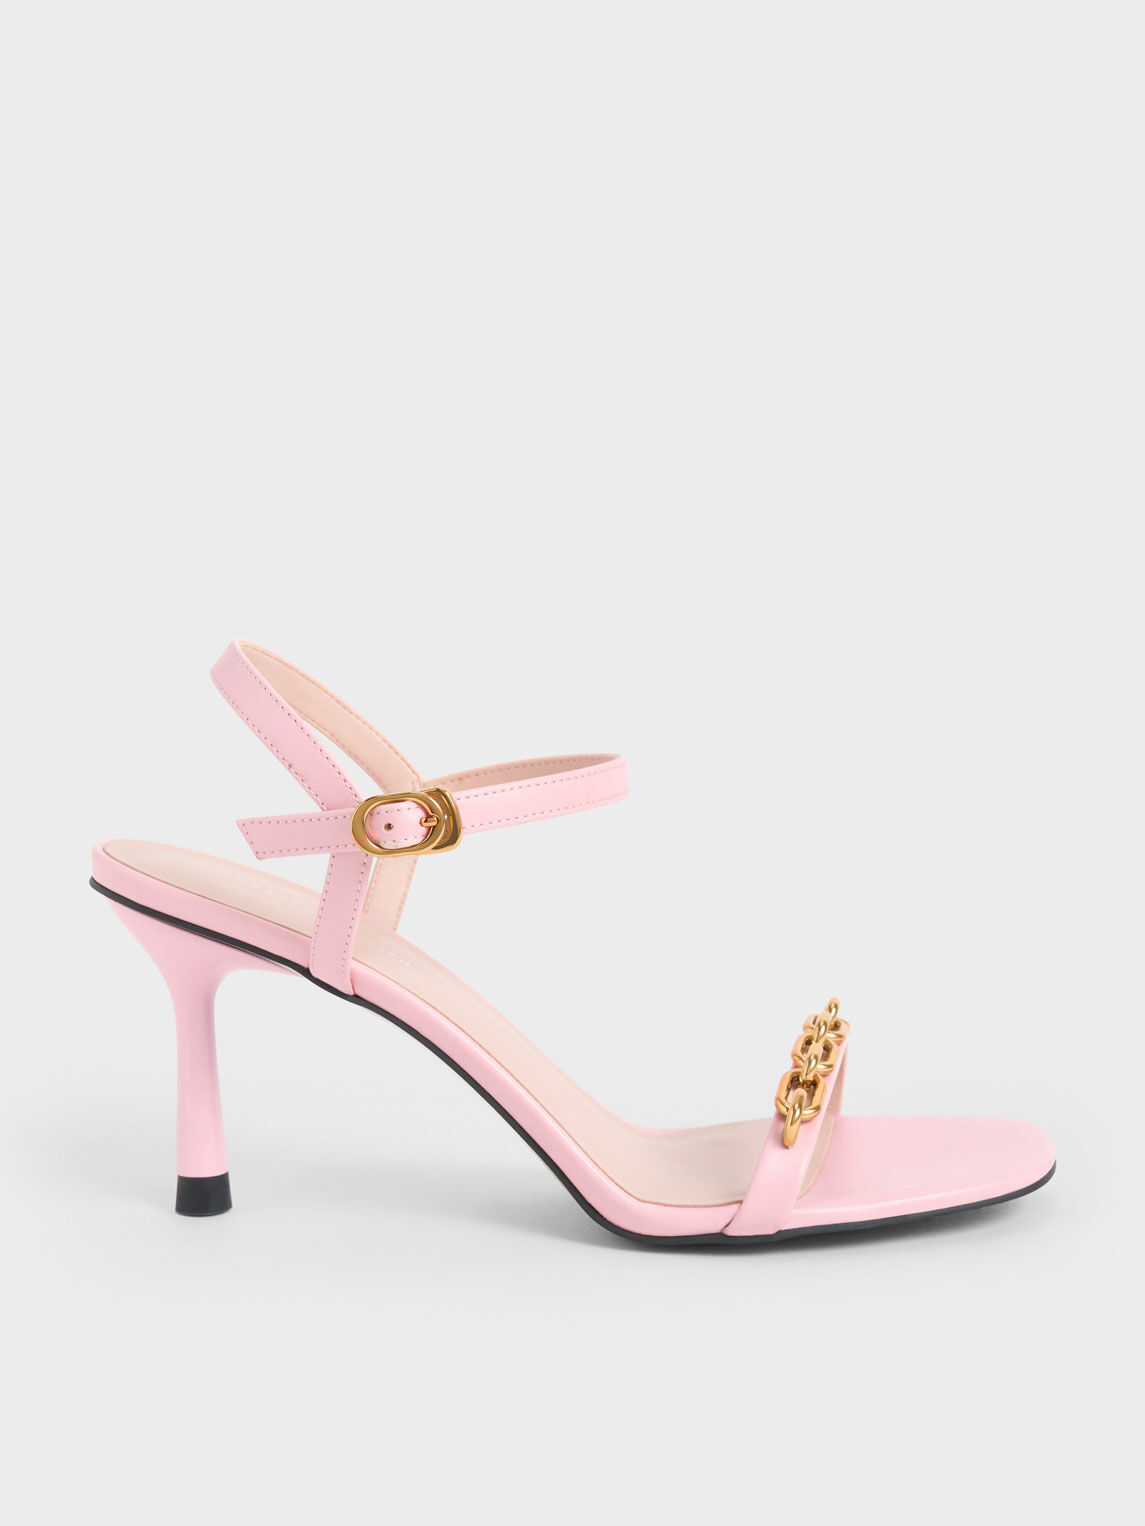 TOSHINA SHOES KING Women Pink Heels - Buy TOSHINA SHOES KING Women Pink  Heels Online at Best Price - Shop Online for Footwears in India |  Flipkart.com